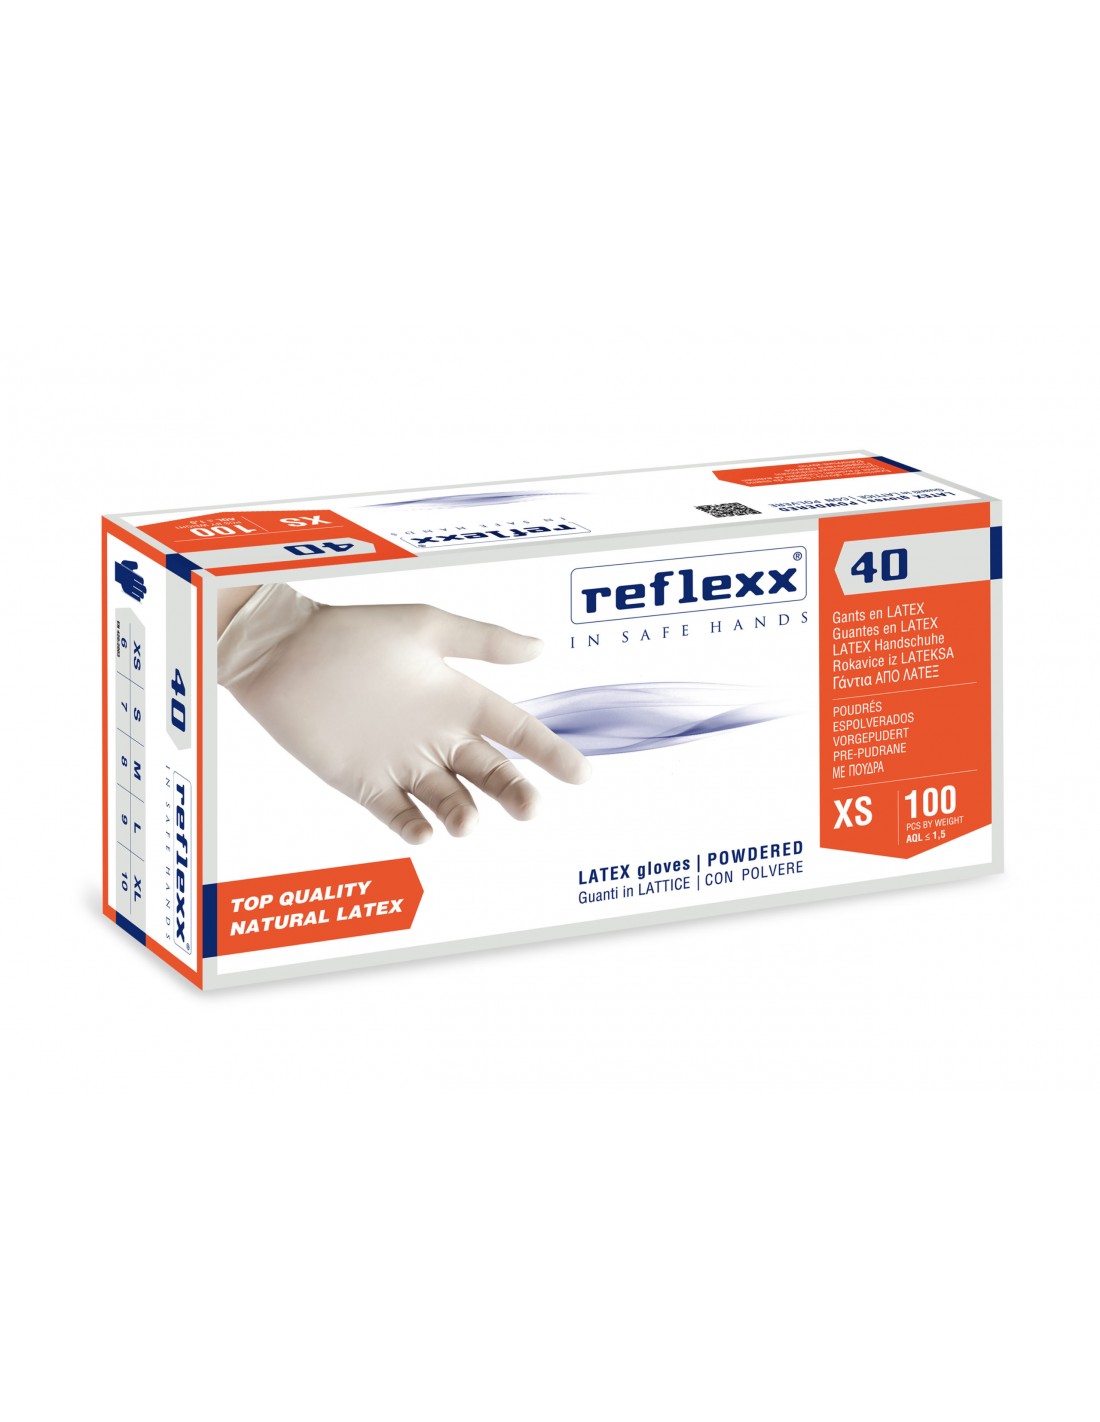 Reflexx 40